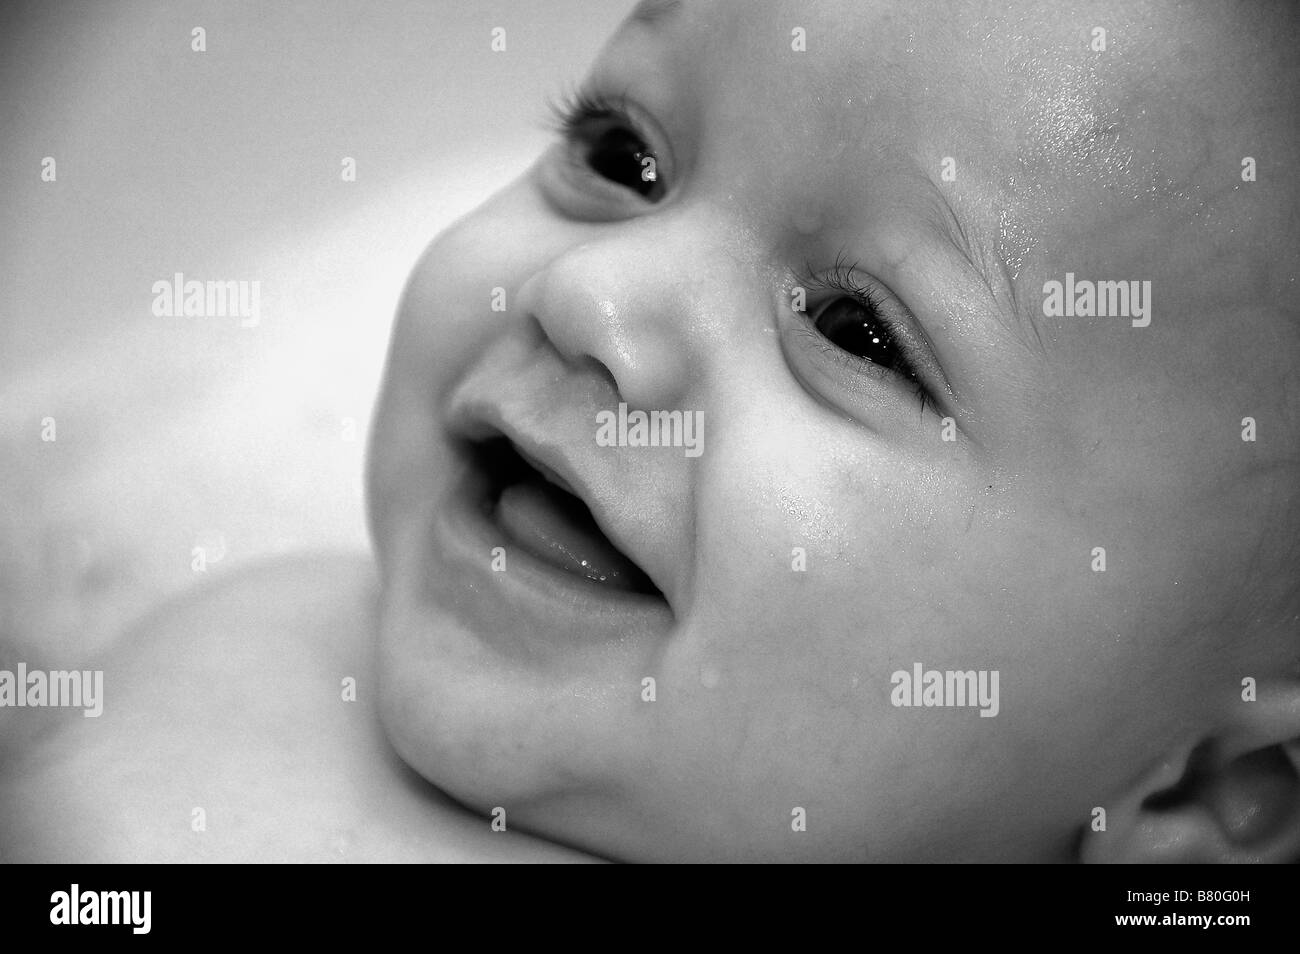 Jolie photo de little baby boy smiling in bath Banque D'Images